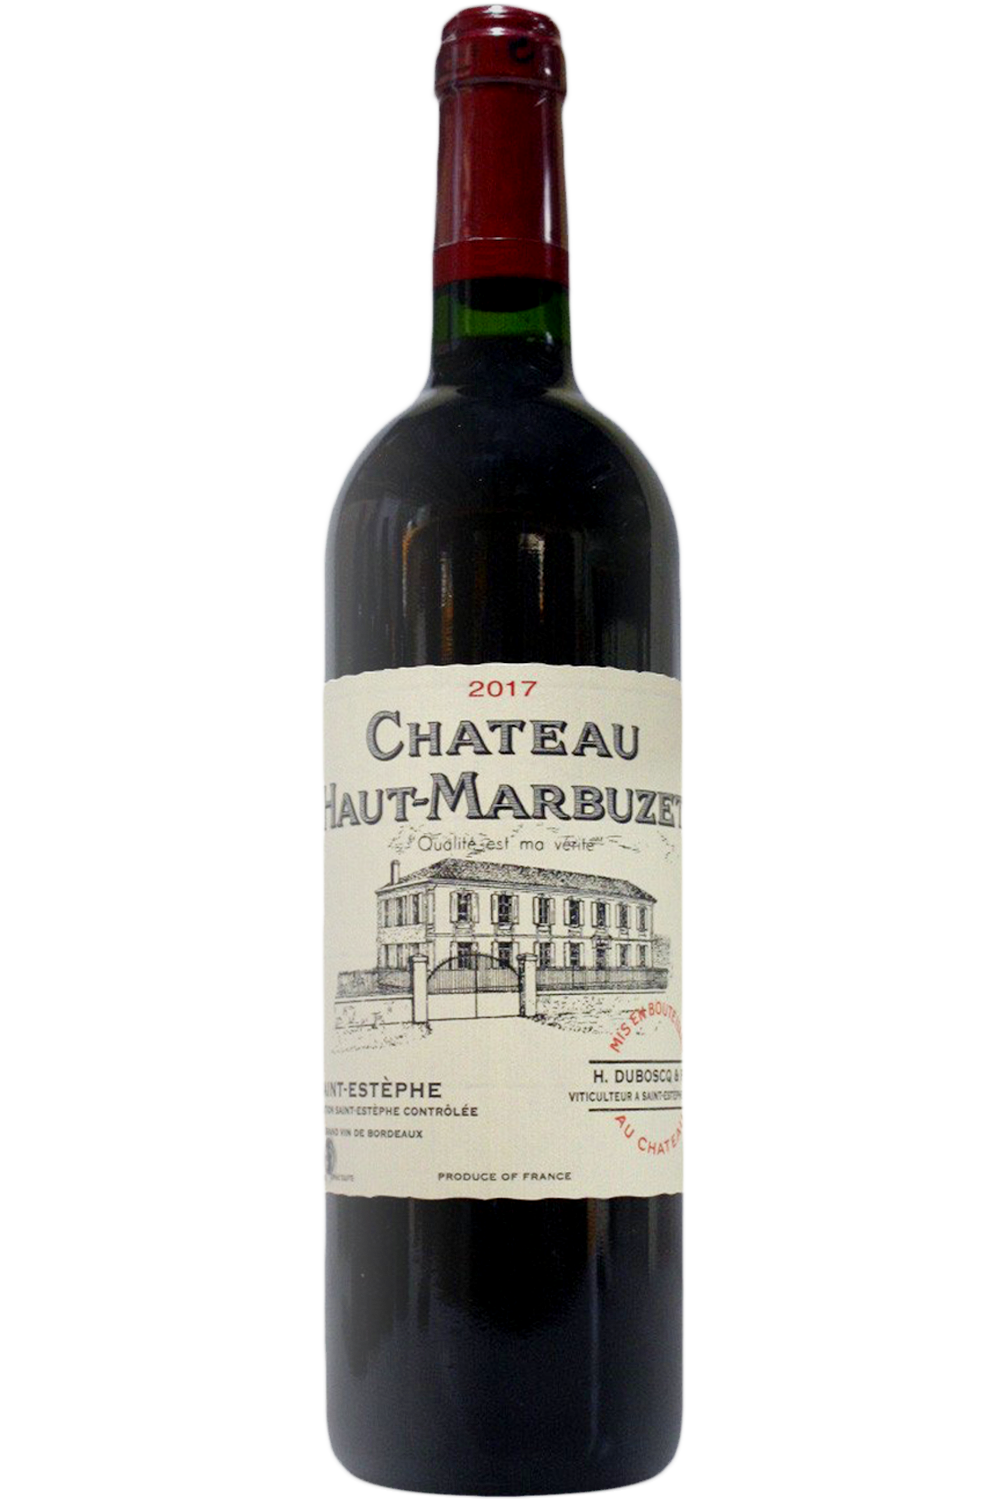 WineVins Chateau Haut Marbuzet 2017